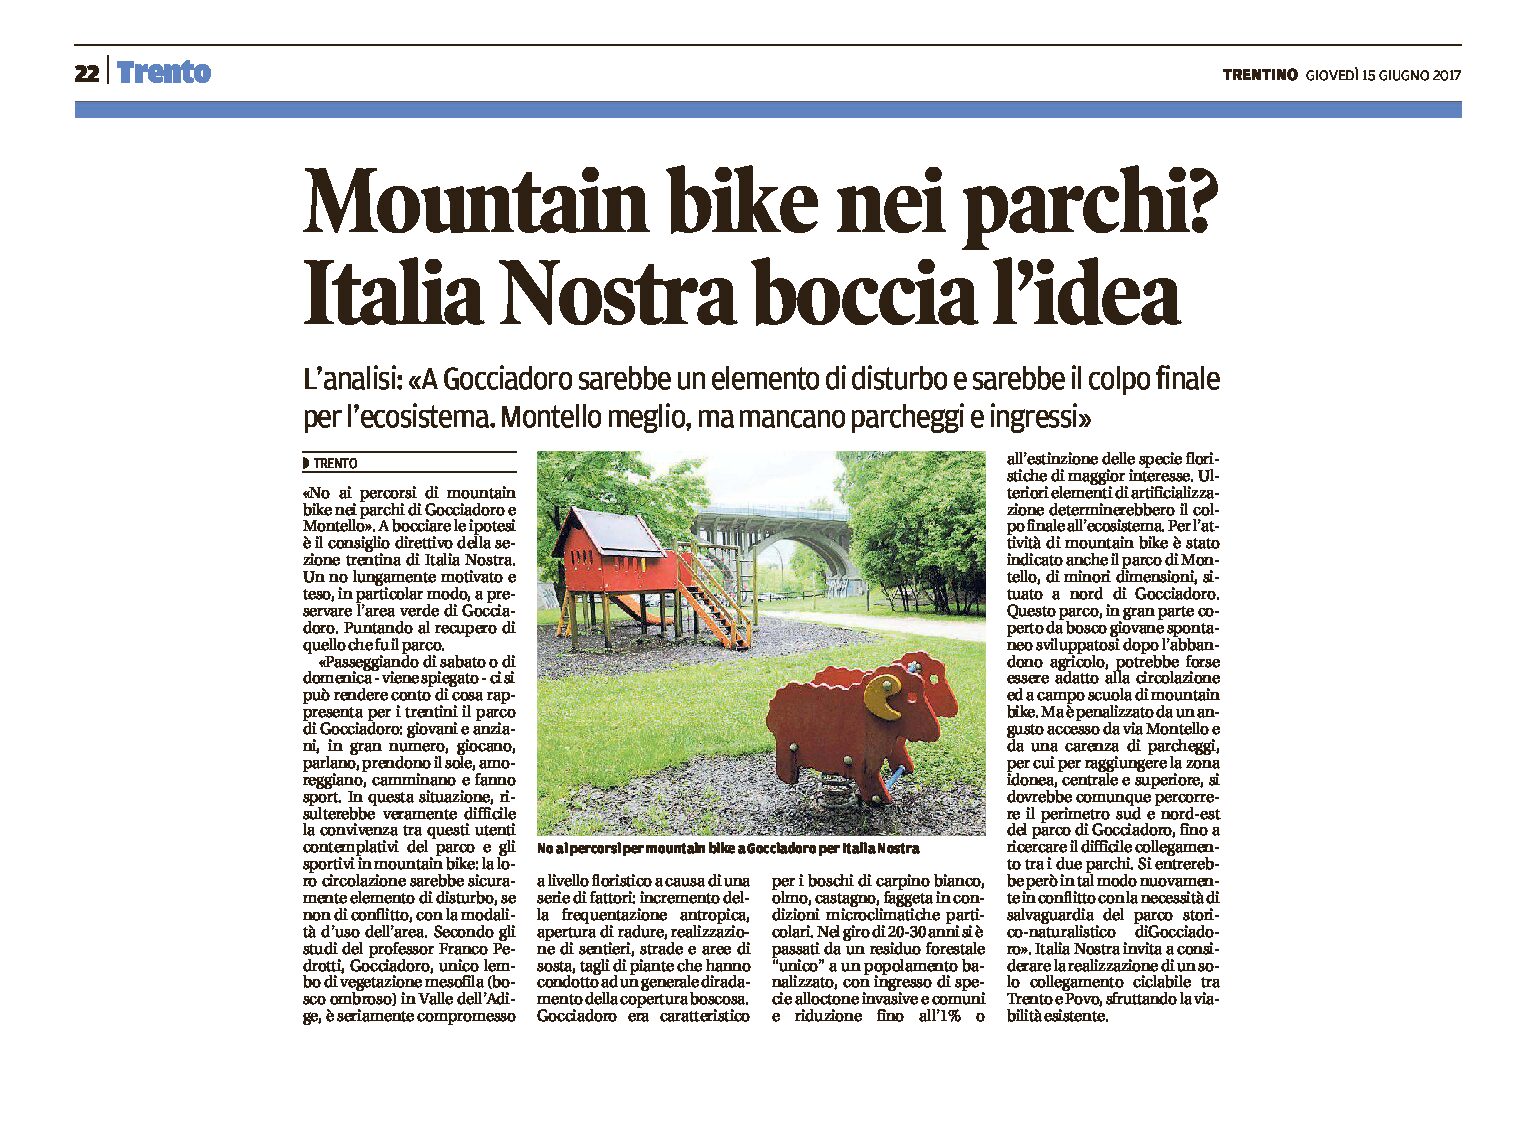 Trento, Gocciadoro: Italia Nostra boccia l’idea delle mountain bike nel parco